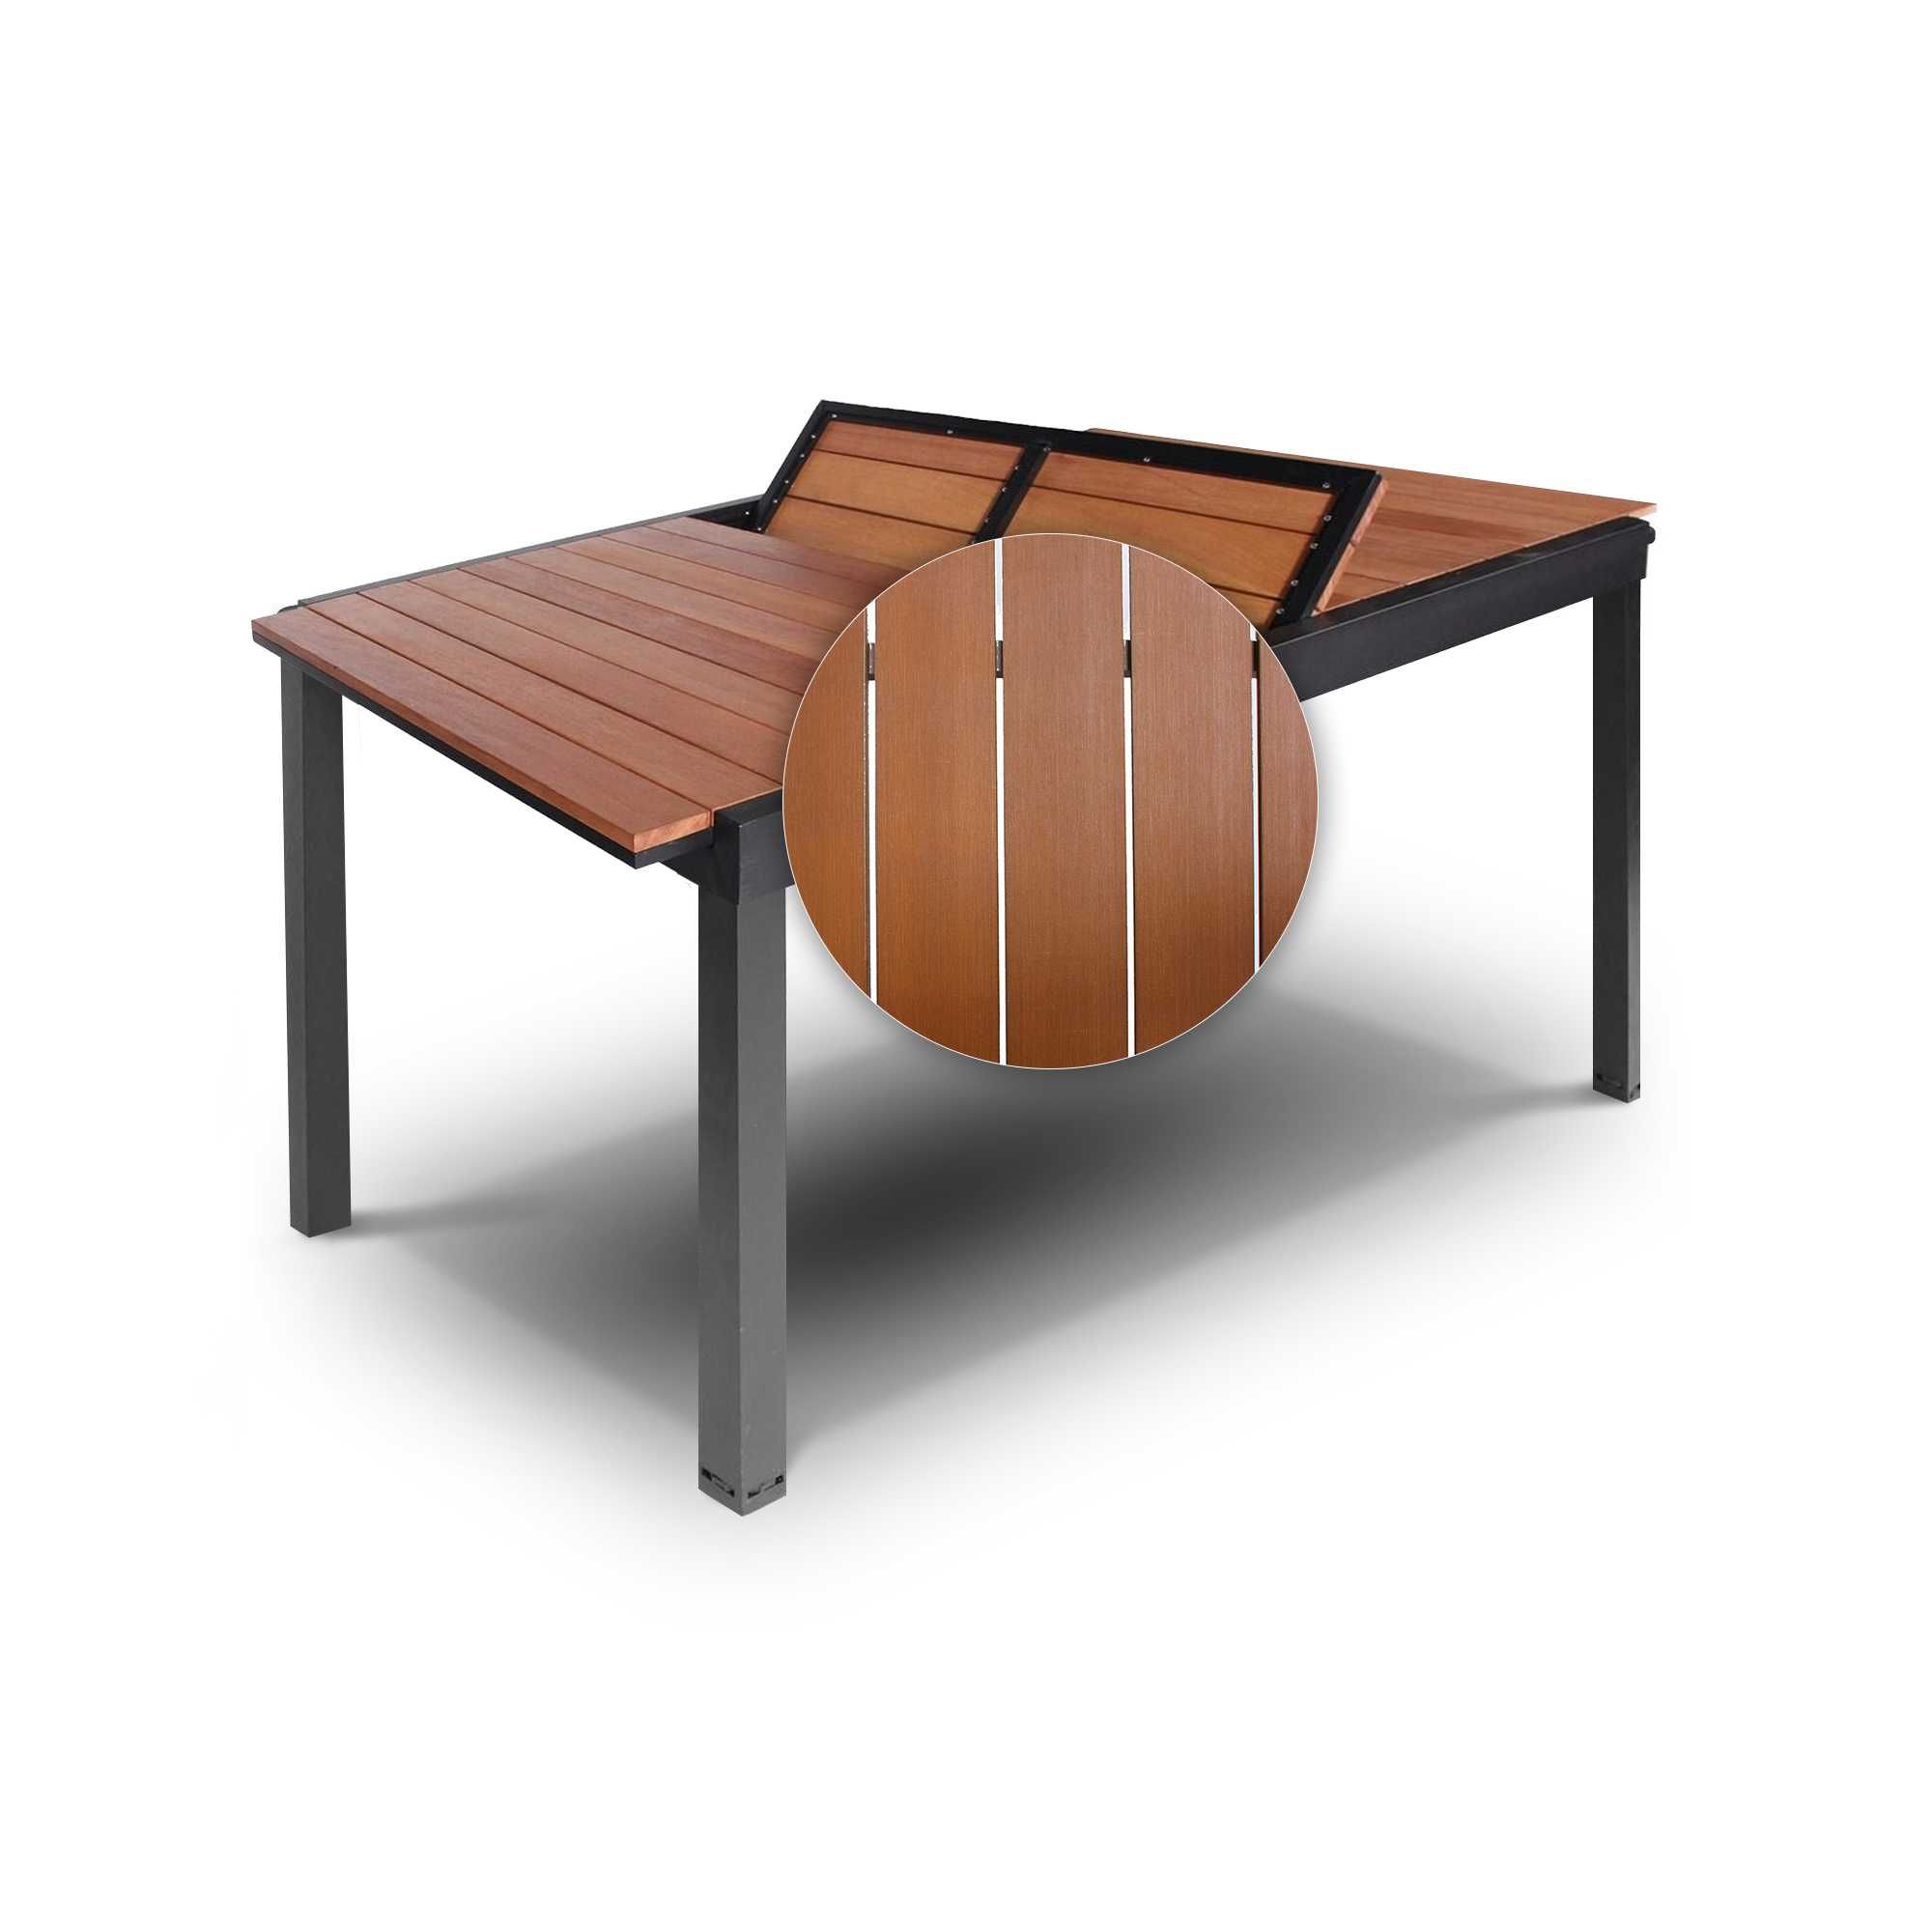 Stół ogrodowy Stół rozkładany Stół drewniany lub plastikowy